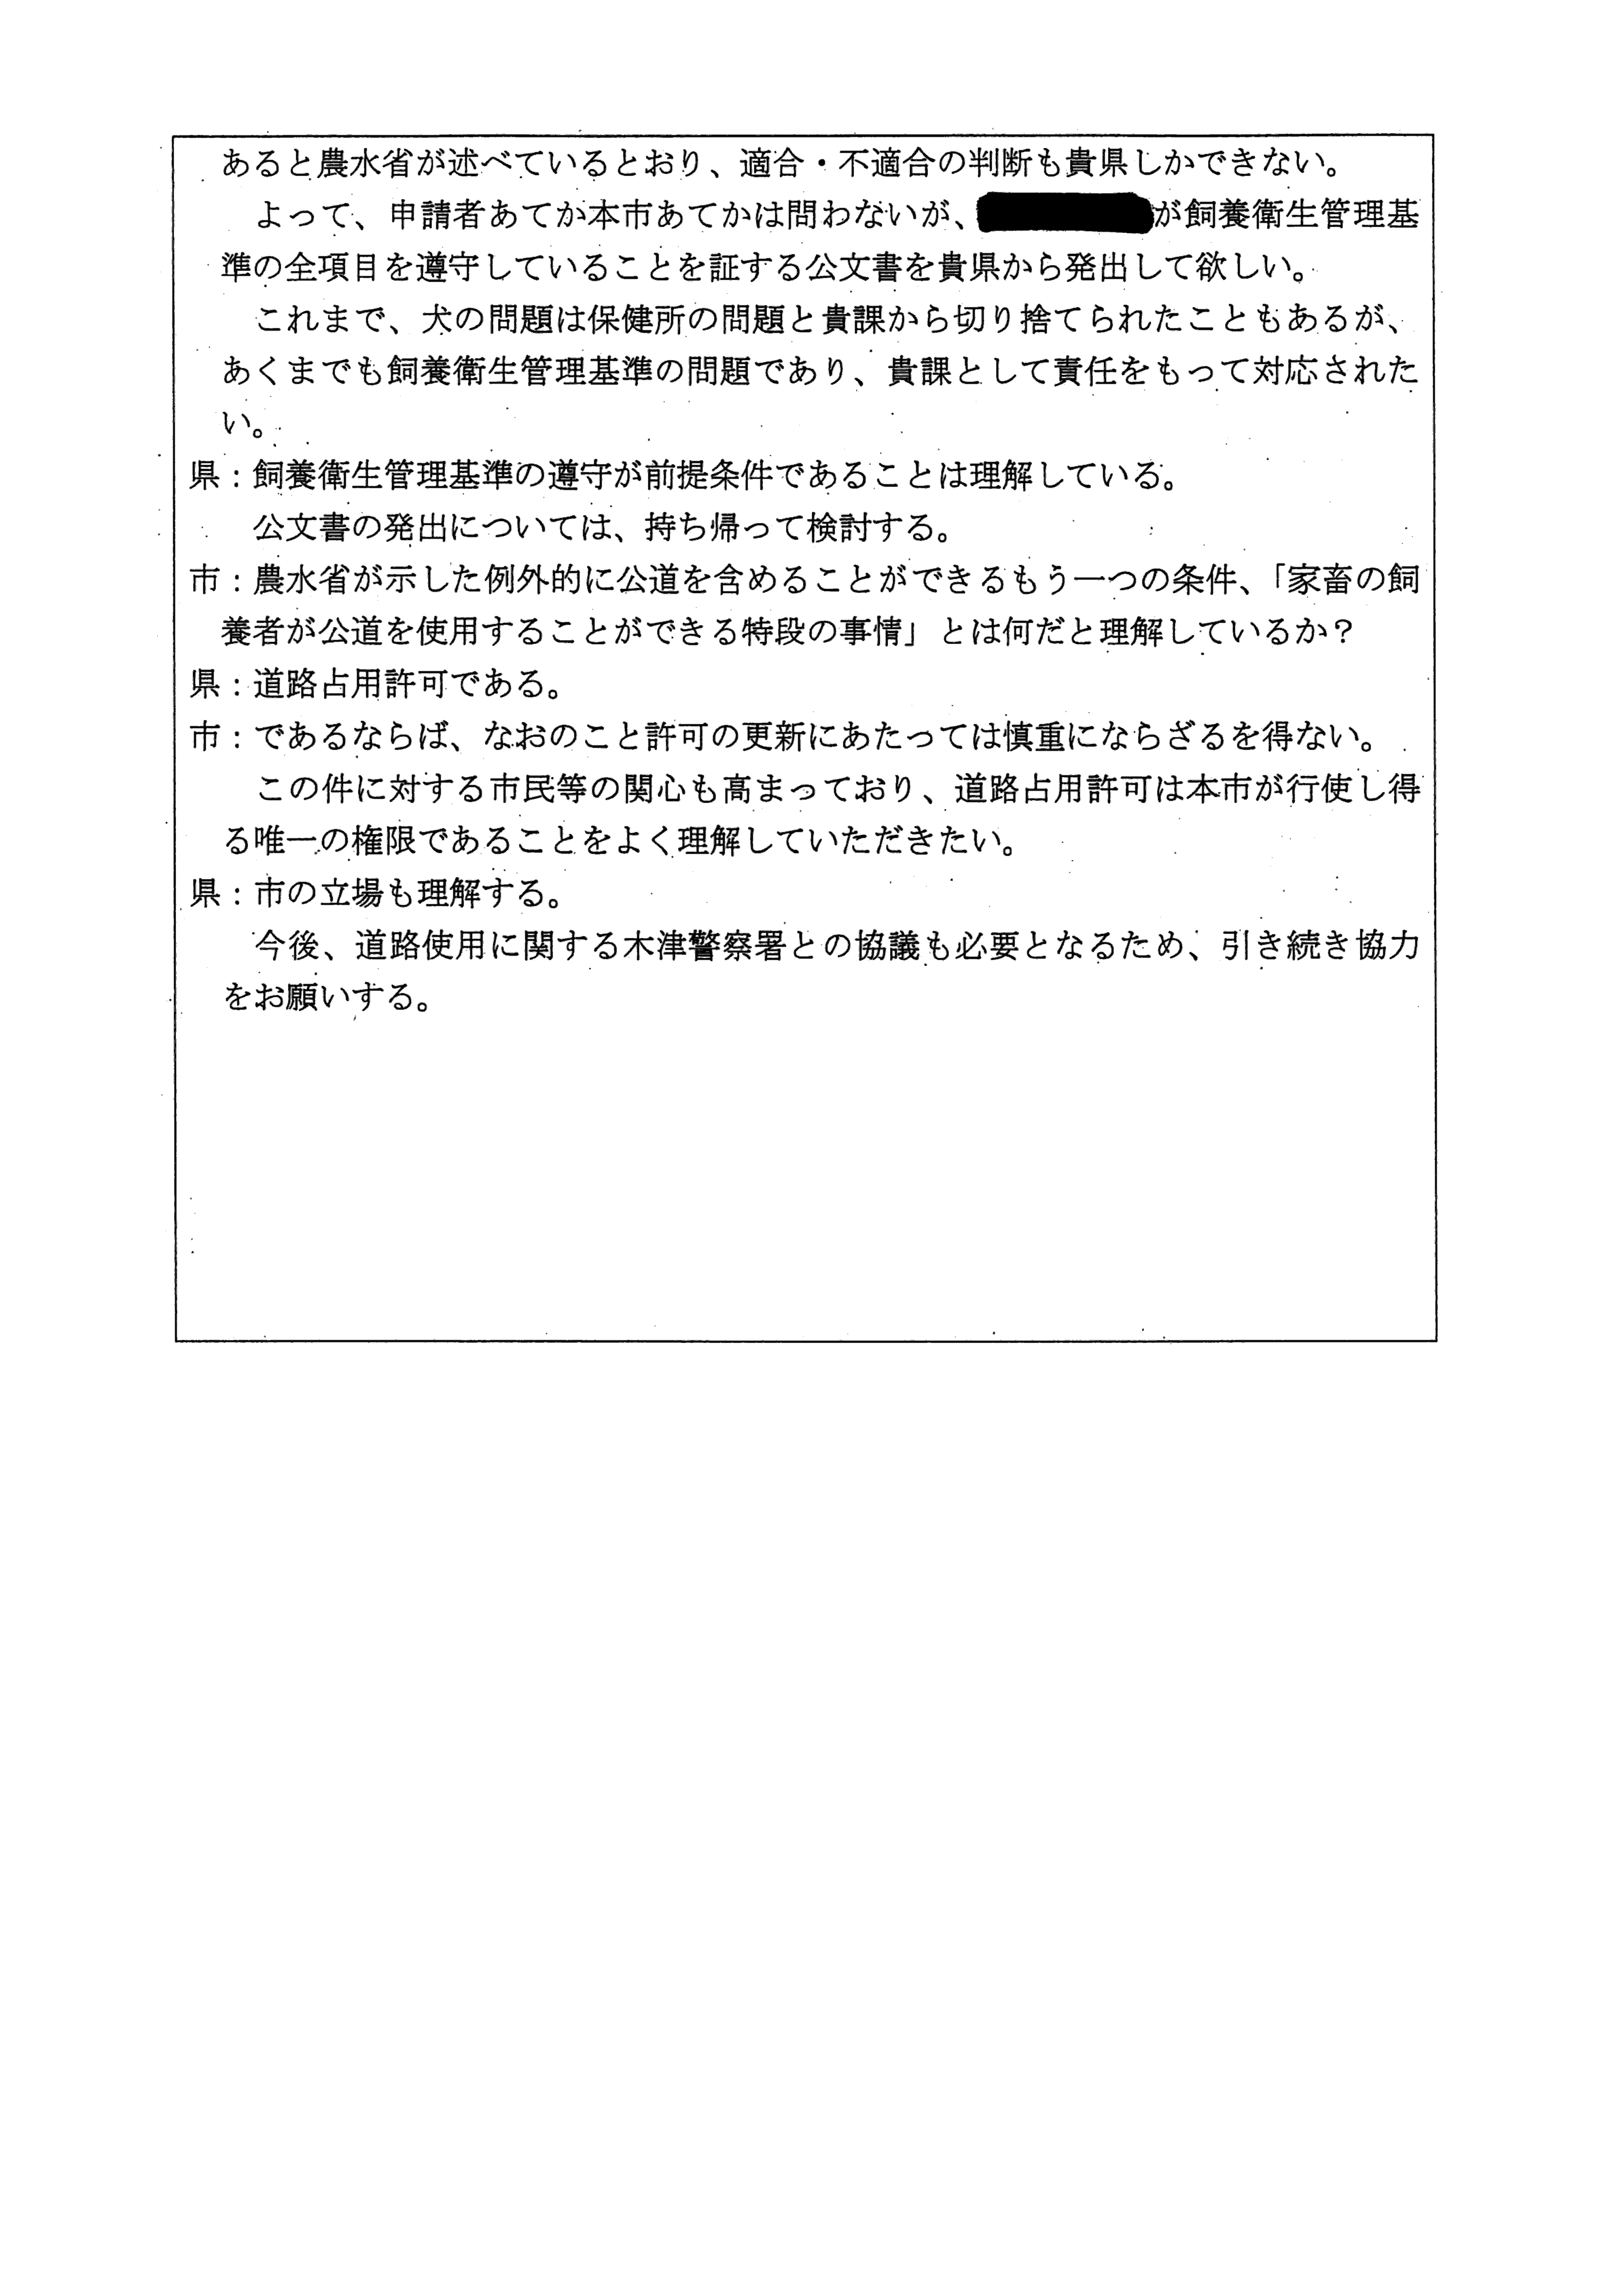 令和4(2022)年2月25日 村田商店に対する市道（加2092号）占用許可について（奈良県との協議）-04